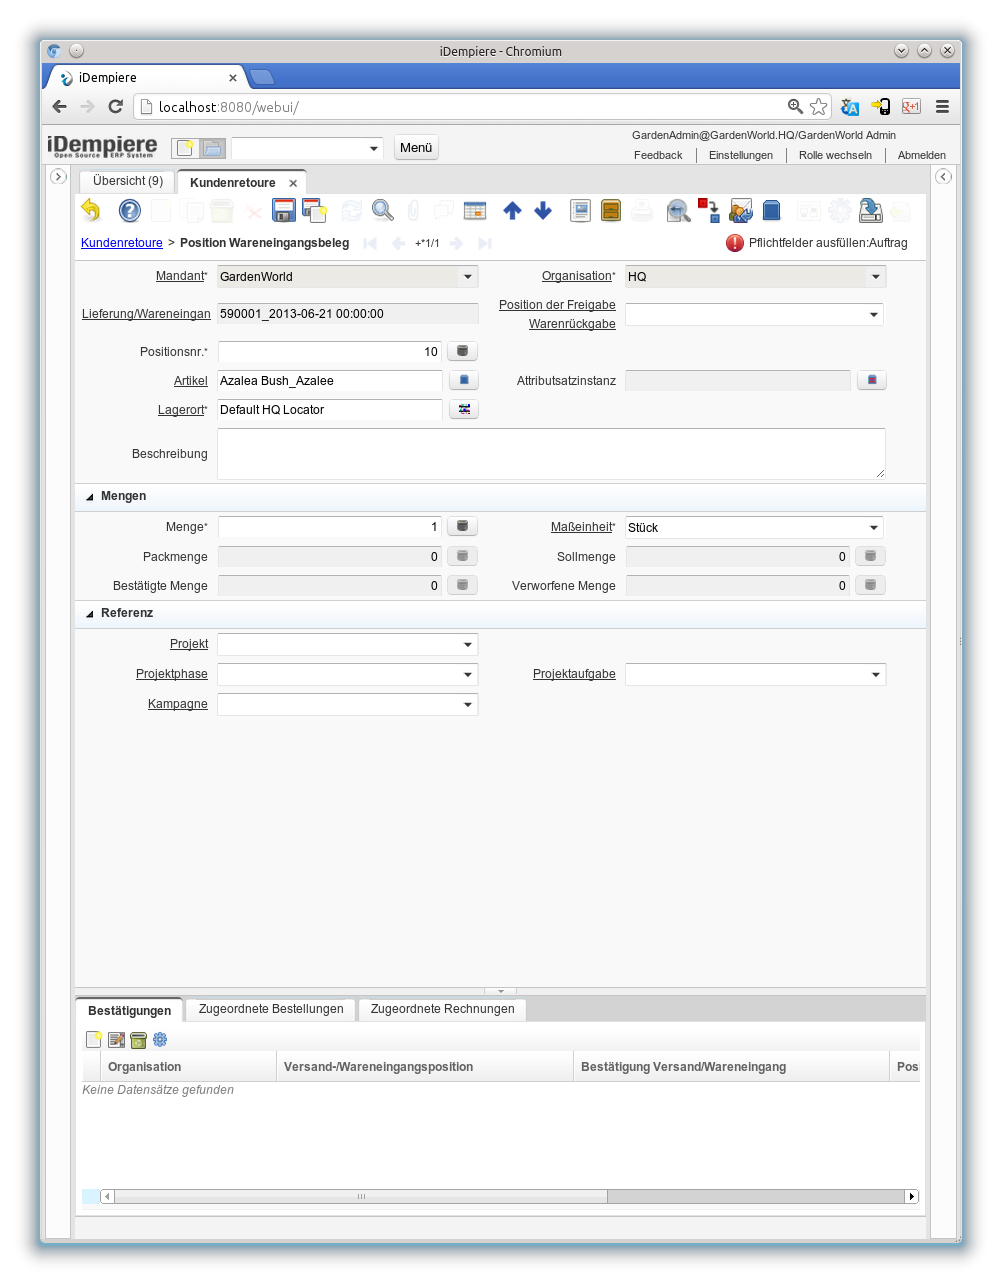 Kundenretoure - Position Wareneingangsbeleg - Fenster (iDempiere 1.0.0).png